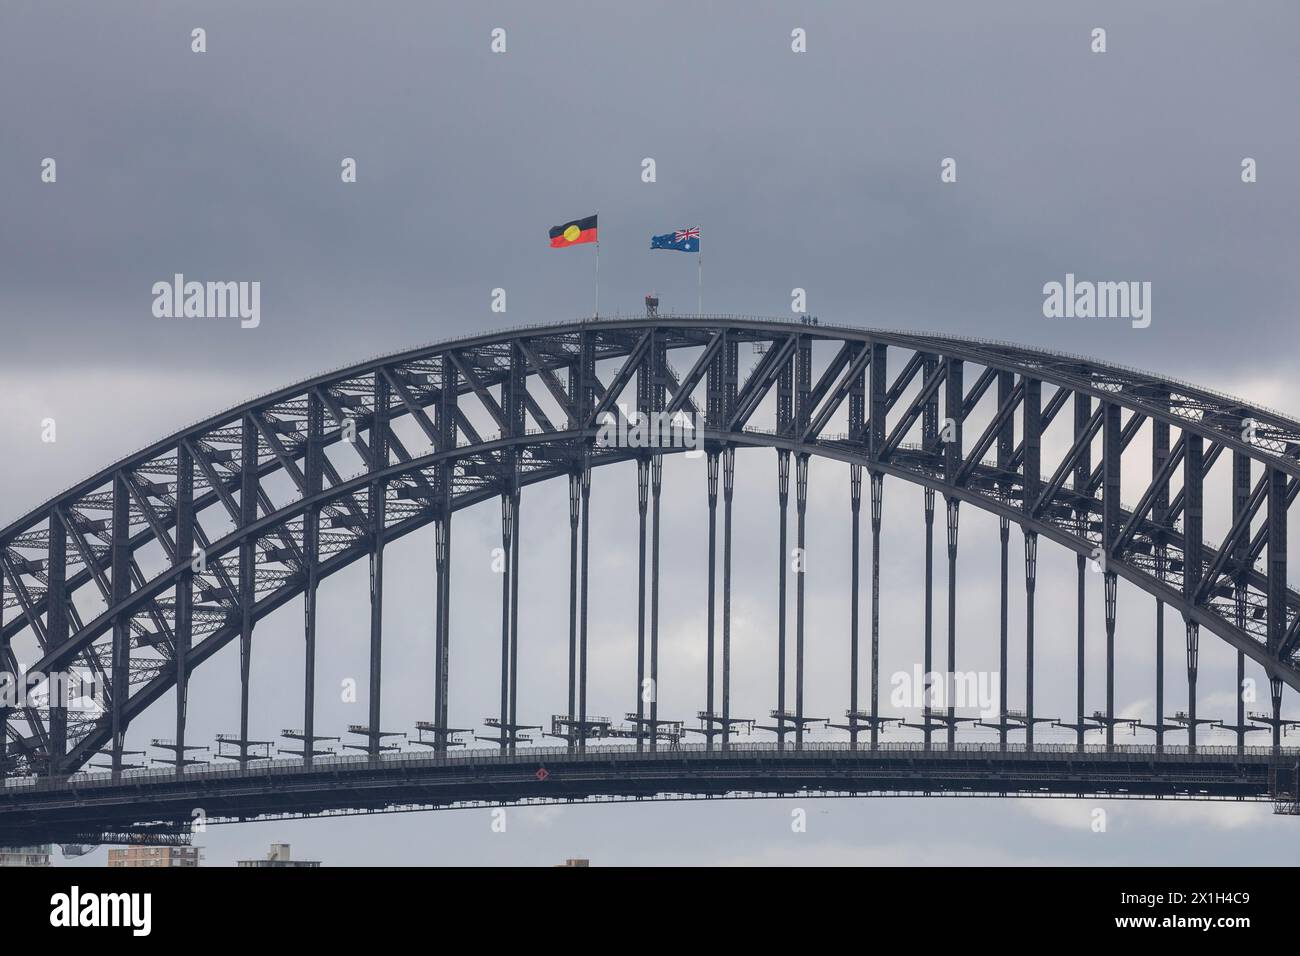 Die berühmte Sydney Harbour Bridge, die Flaggen der Aborigines und australiens, die auf dem Gipfel fliegen, die Menschen, die den Bogen vom Brückenkletterausflug hinunterlaufen, Sydney, NSW Stockfoto